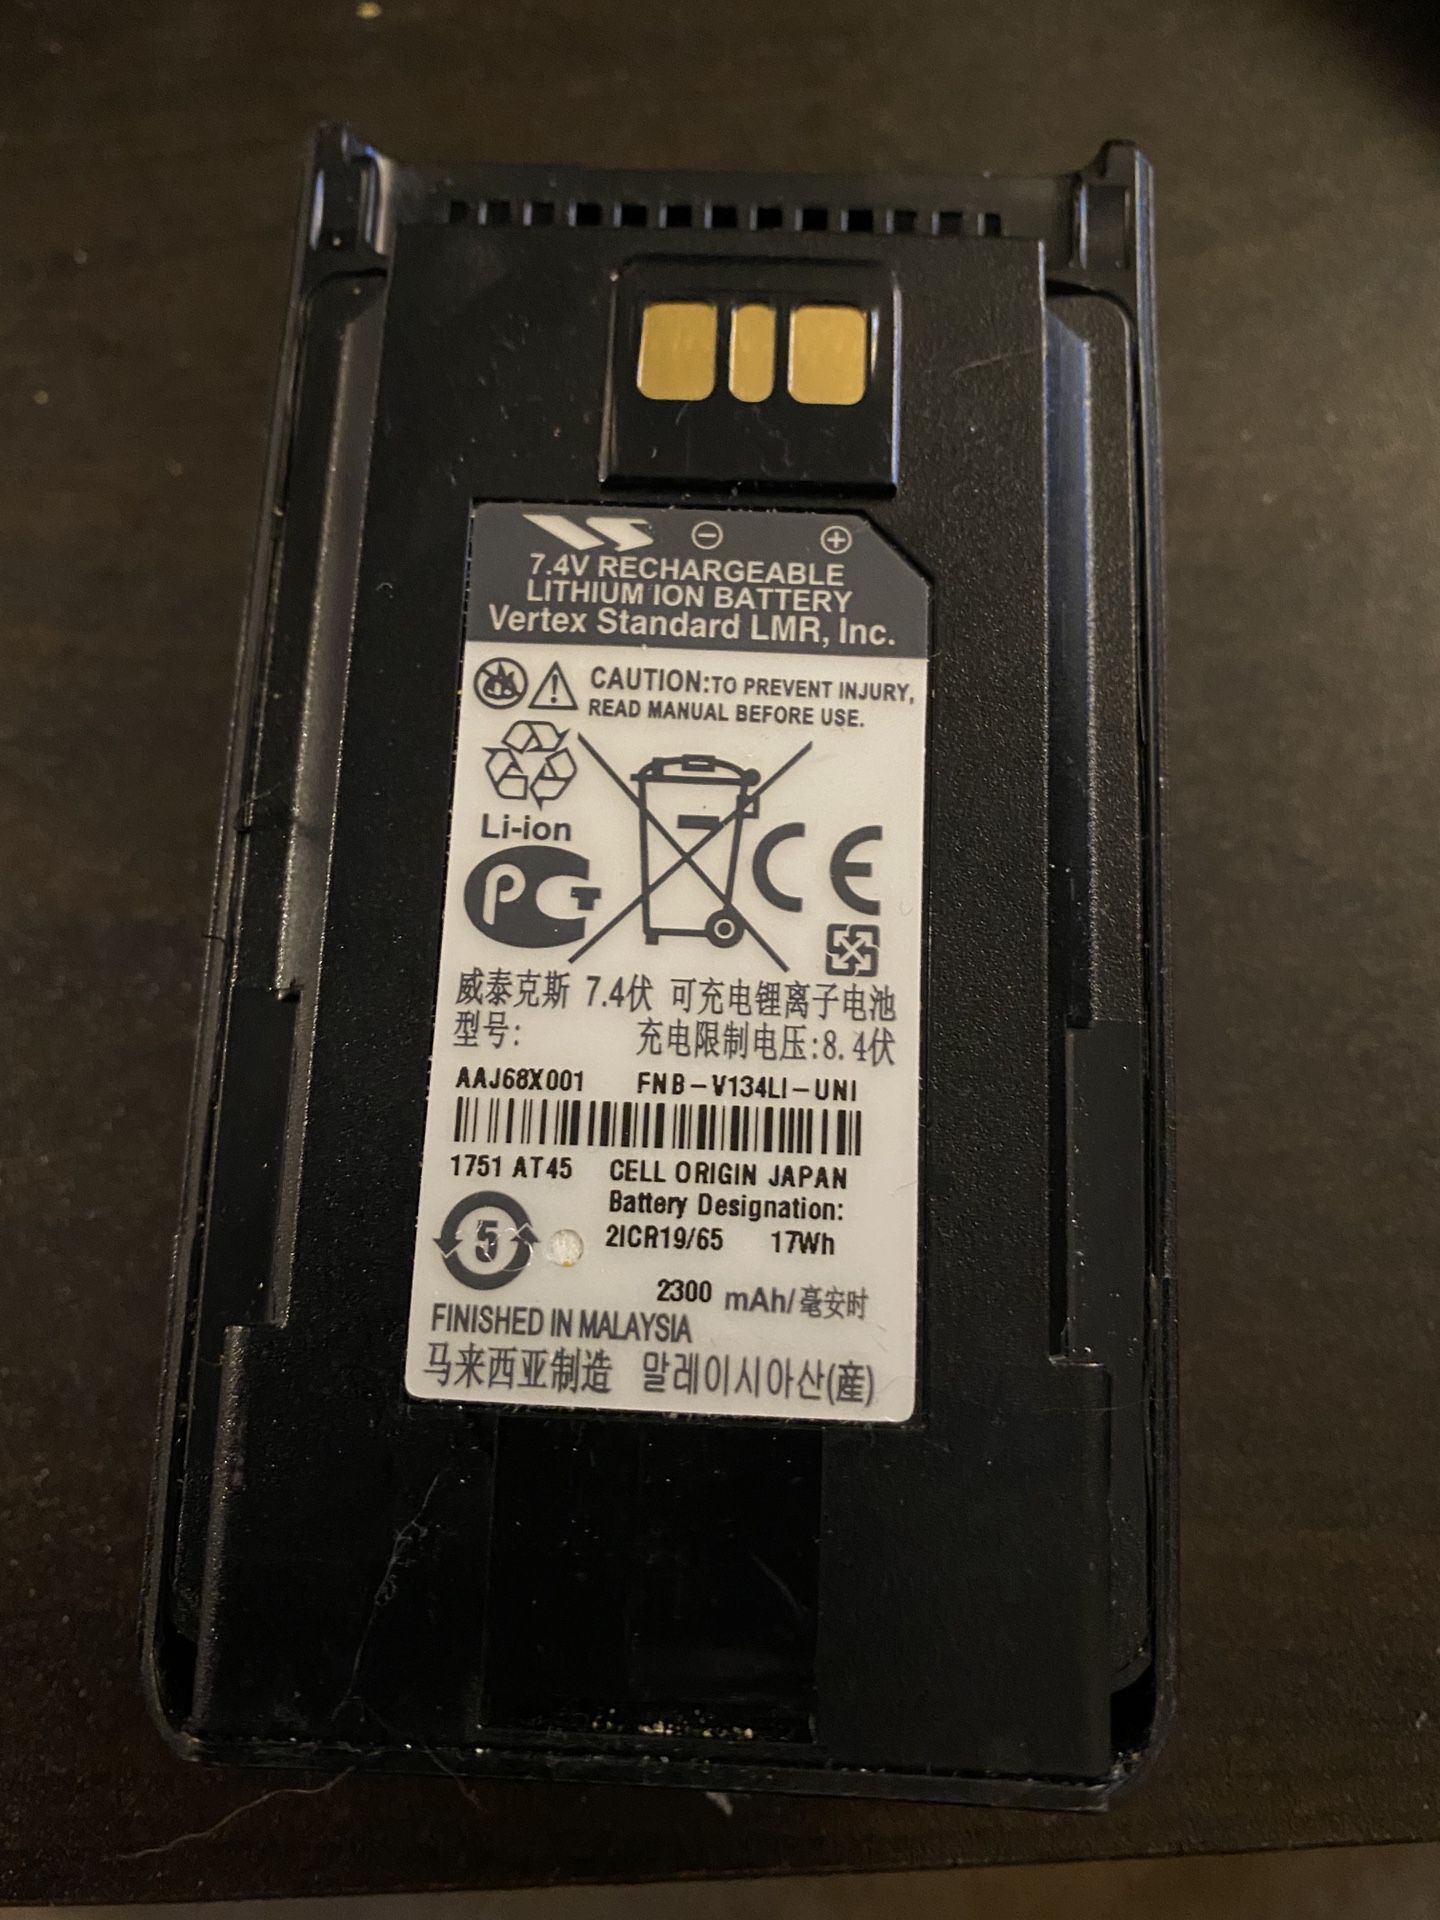 Motorola Vertex Standard OEM 2300 mAh LiIon Battery AAJ68X001 FNB-V134LI-UNI 